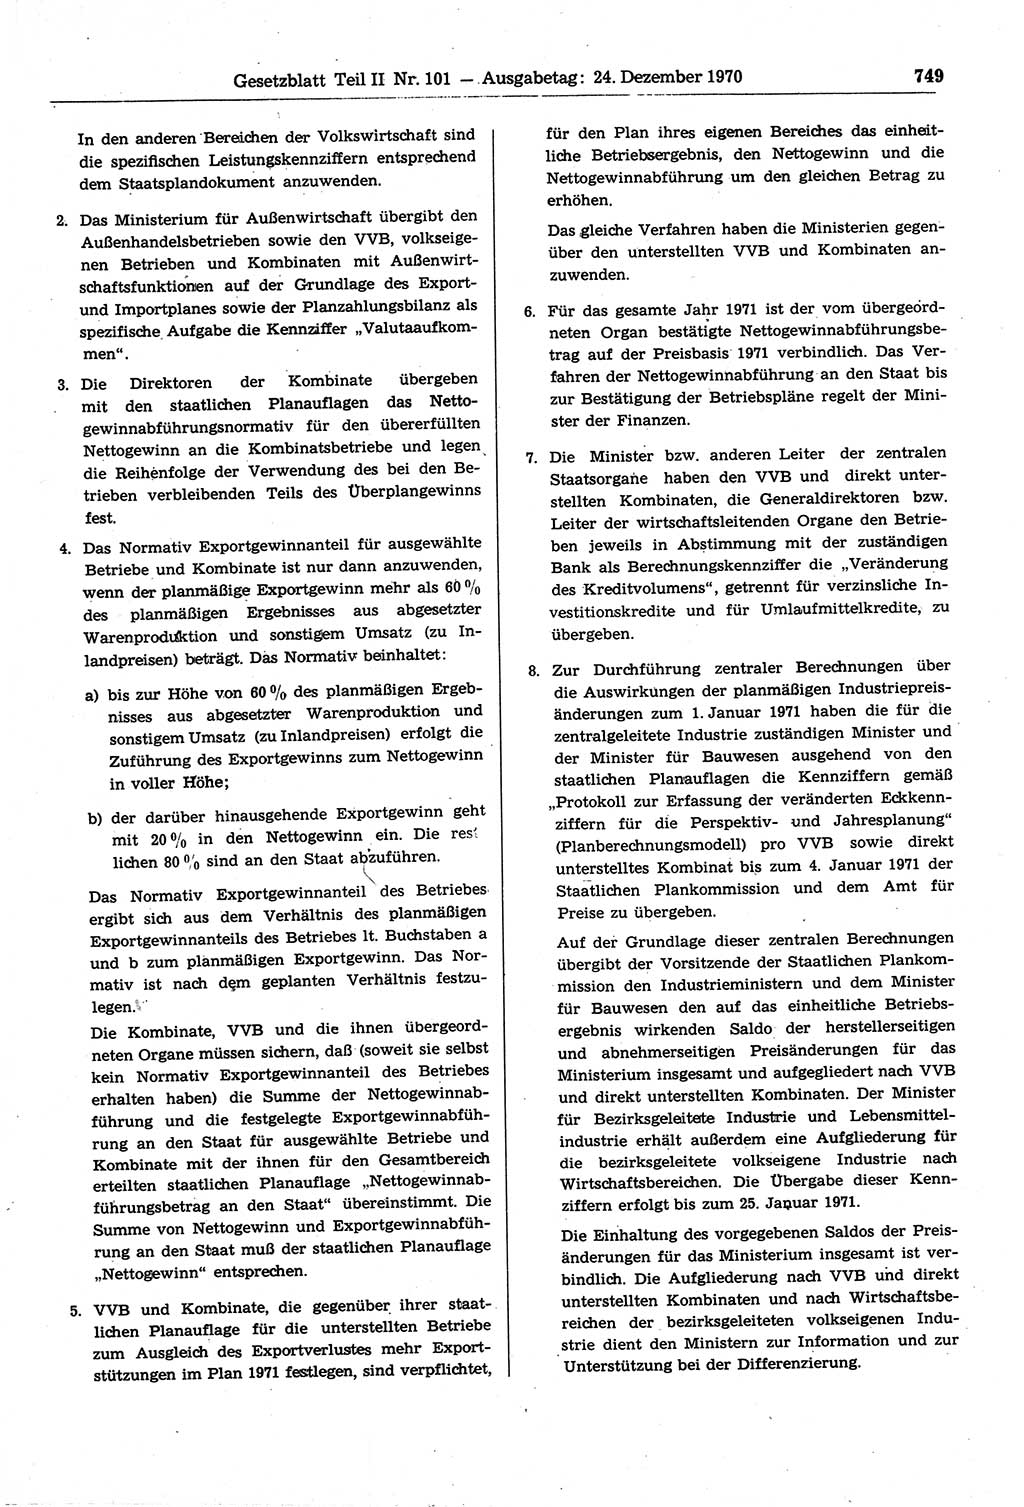 Gesetzblatt (GBl.) der Deutschen Demokratischen Republik (DDR) Teil ⅠⅠ 1970, Seite 749 (GBl. DDR ⅠⅠ 1970, S. 749)